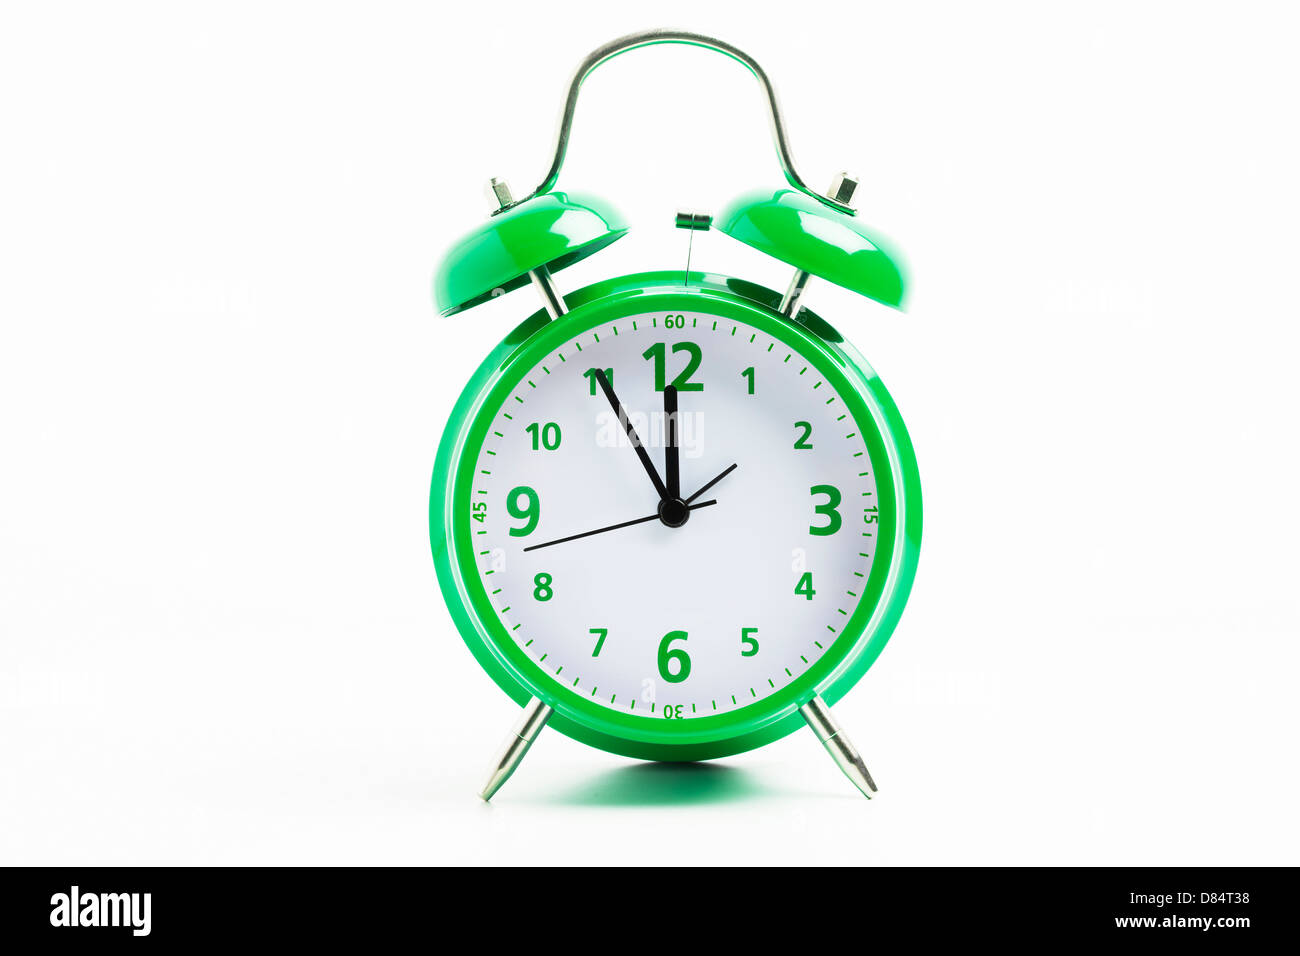 Imagen de un reloj despertador retro verde sobre un fondo blanco con el reloj de 5 a 12 Foto de stock